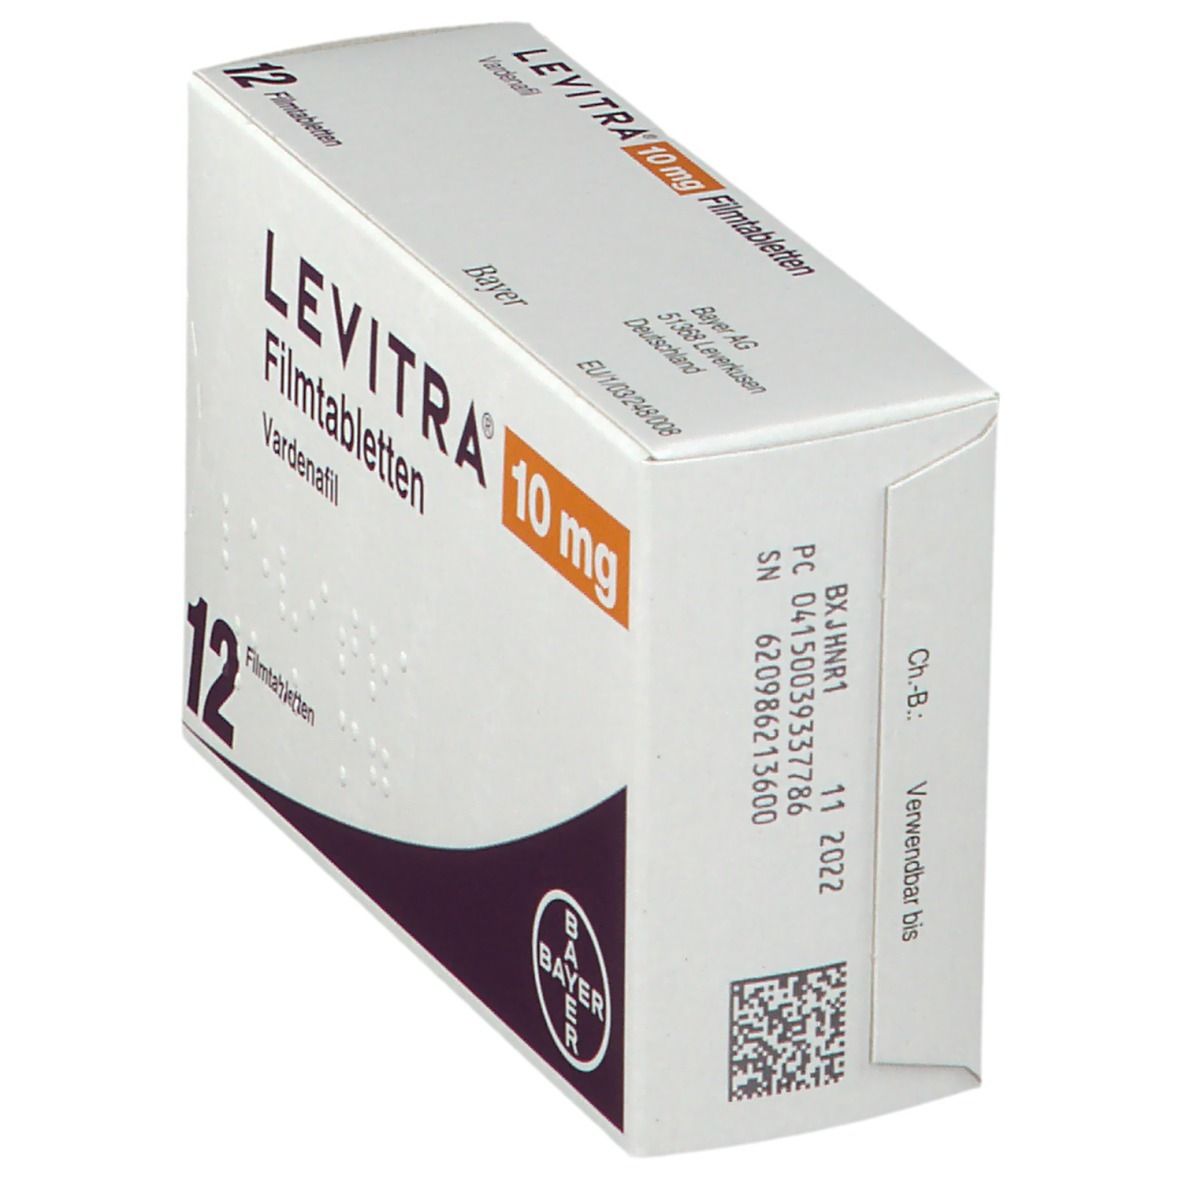 LEVITRA® 10 mg